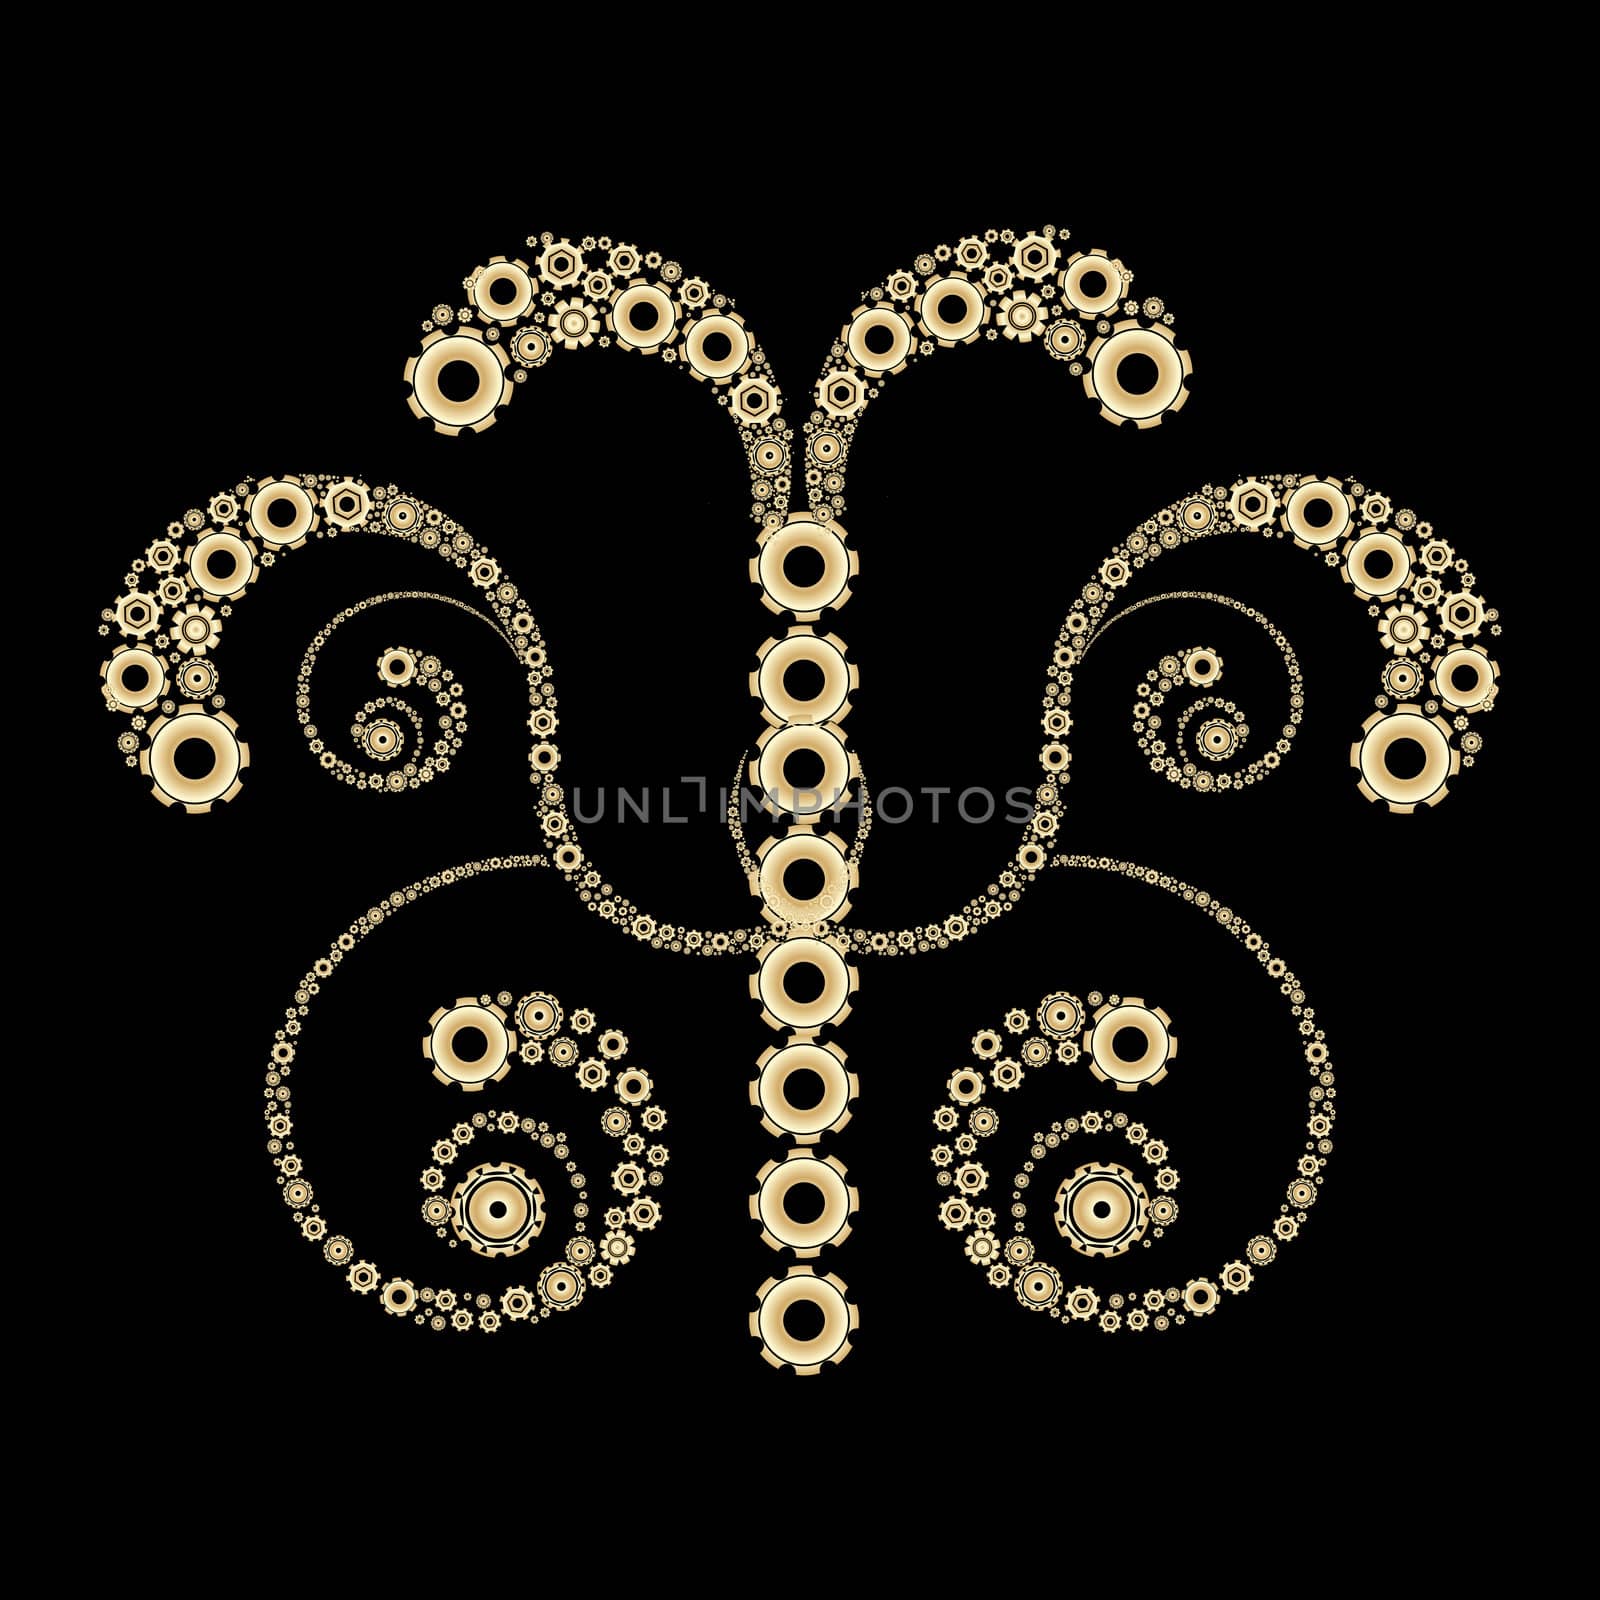 Golden gears design by Lirch